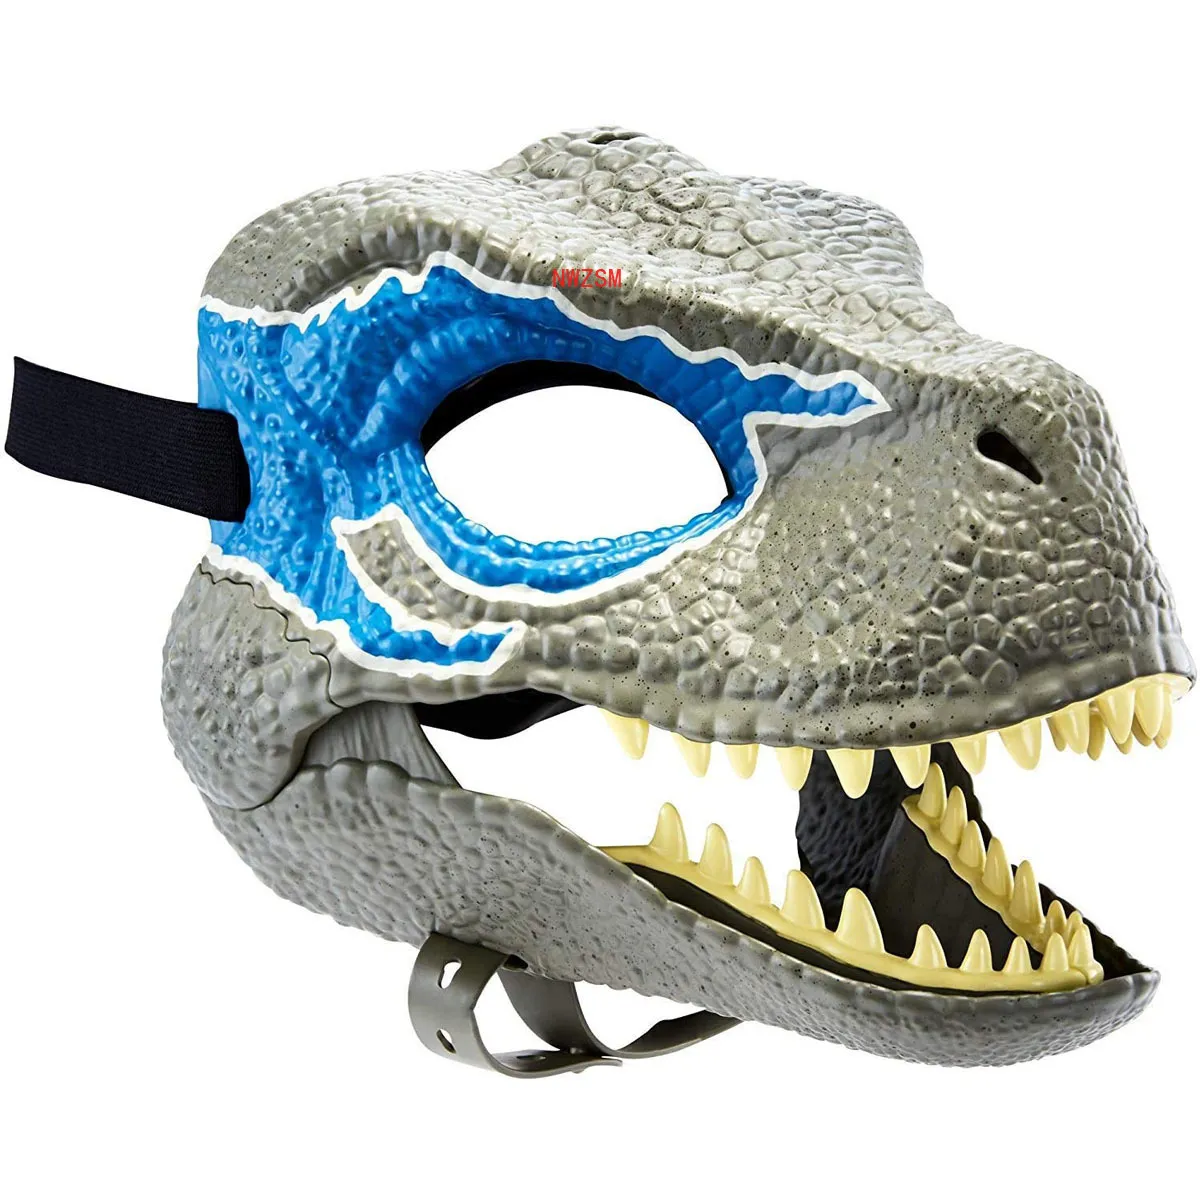 أقنعة الحفلات الهالوين كرنفال هدية فيلوسيرابتور أقنعة T-Rex Dinosaur Mask Animal Cosplay Cosplay Mask Props for Kids